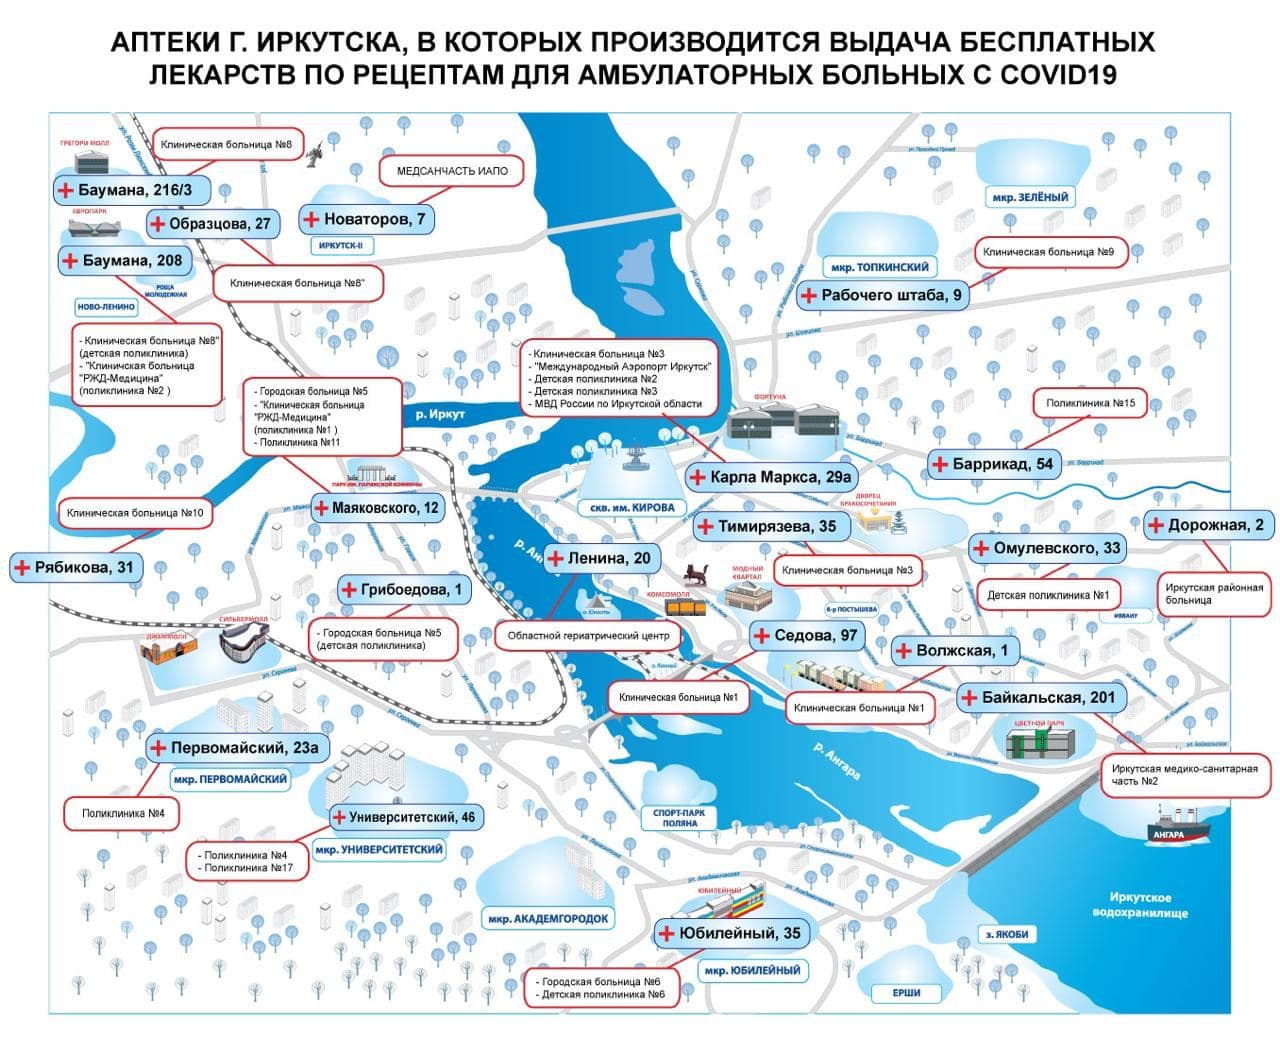 Карта аптек Иркутска с бесплатными лекарствами для больных COVID